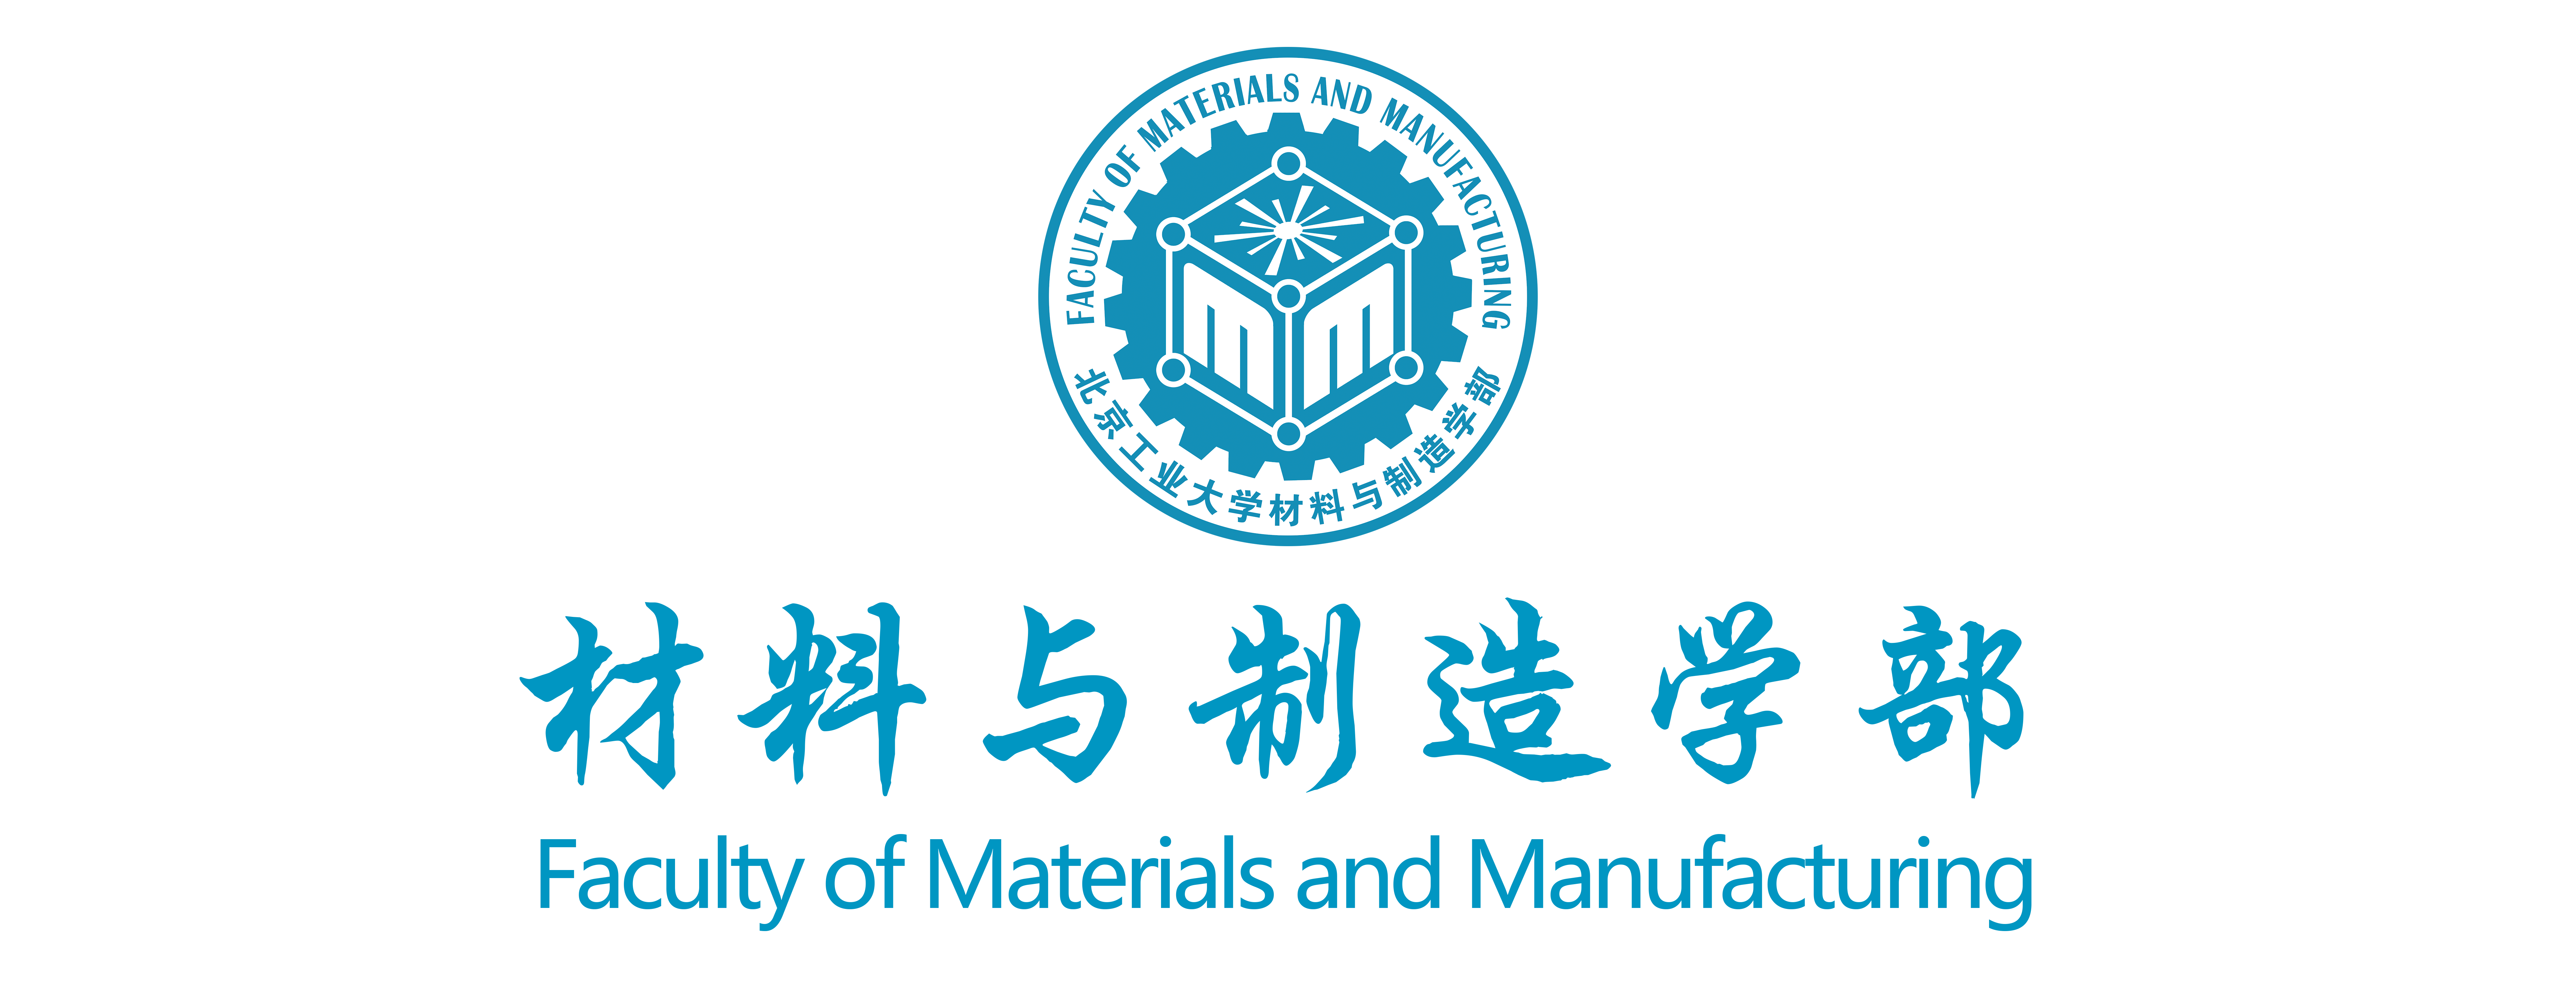 北京工业大学材料与制造学部2.jpg